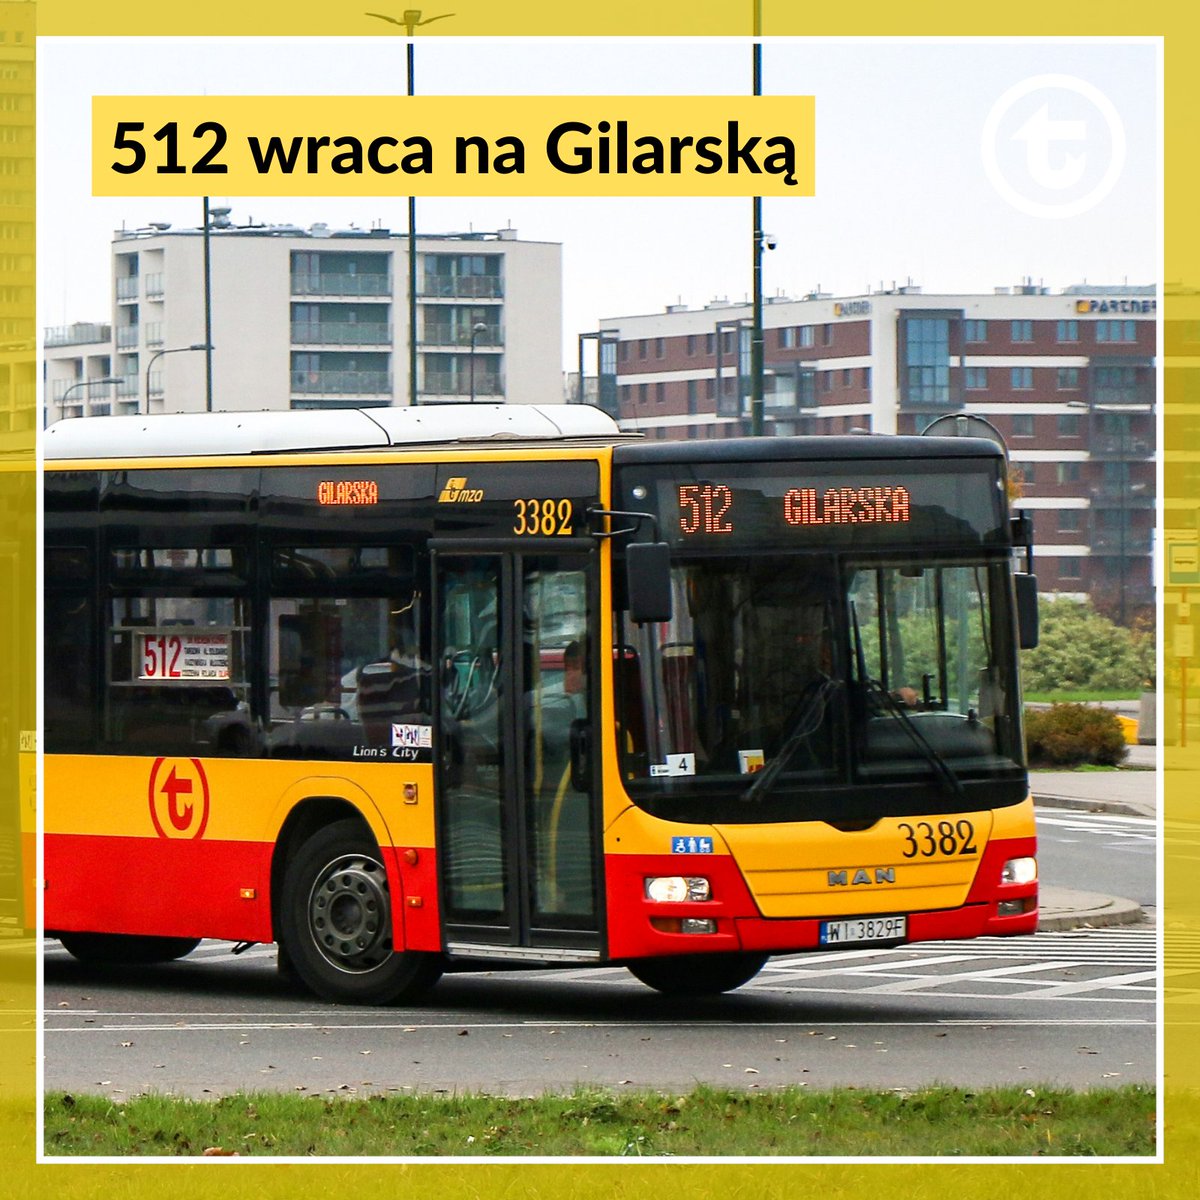 🚌 Dobra wiadomość dla mieszkańców #Zacisze. Od jutra 512 wraca na Gilarską. Nadal objazdem kursują #BUS linii 212 i N11.